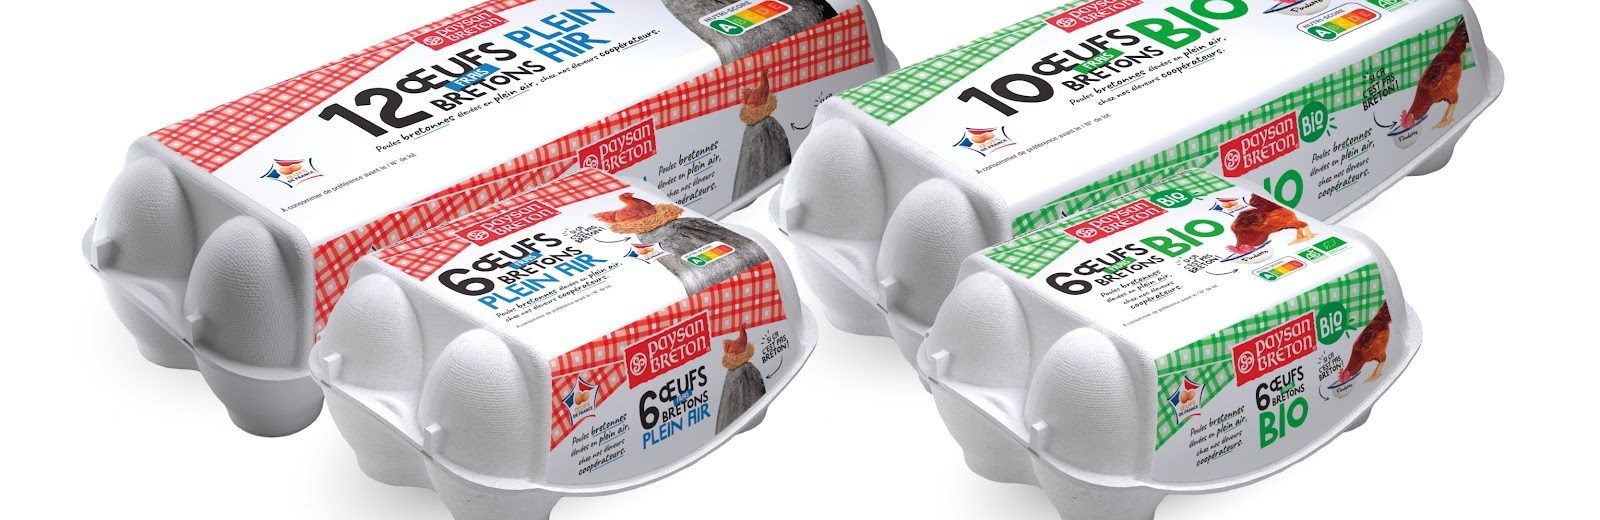 Eureden : Les œufs Paysan Breton disponibles chez Carrefour !